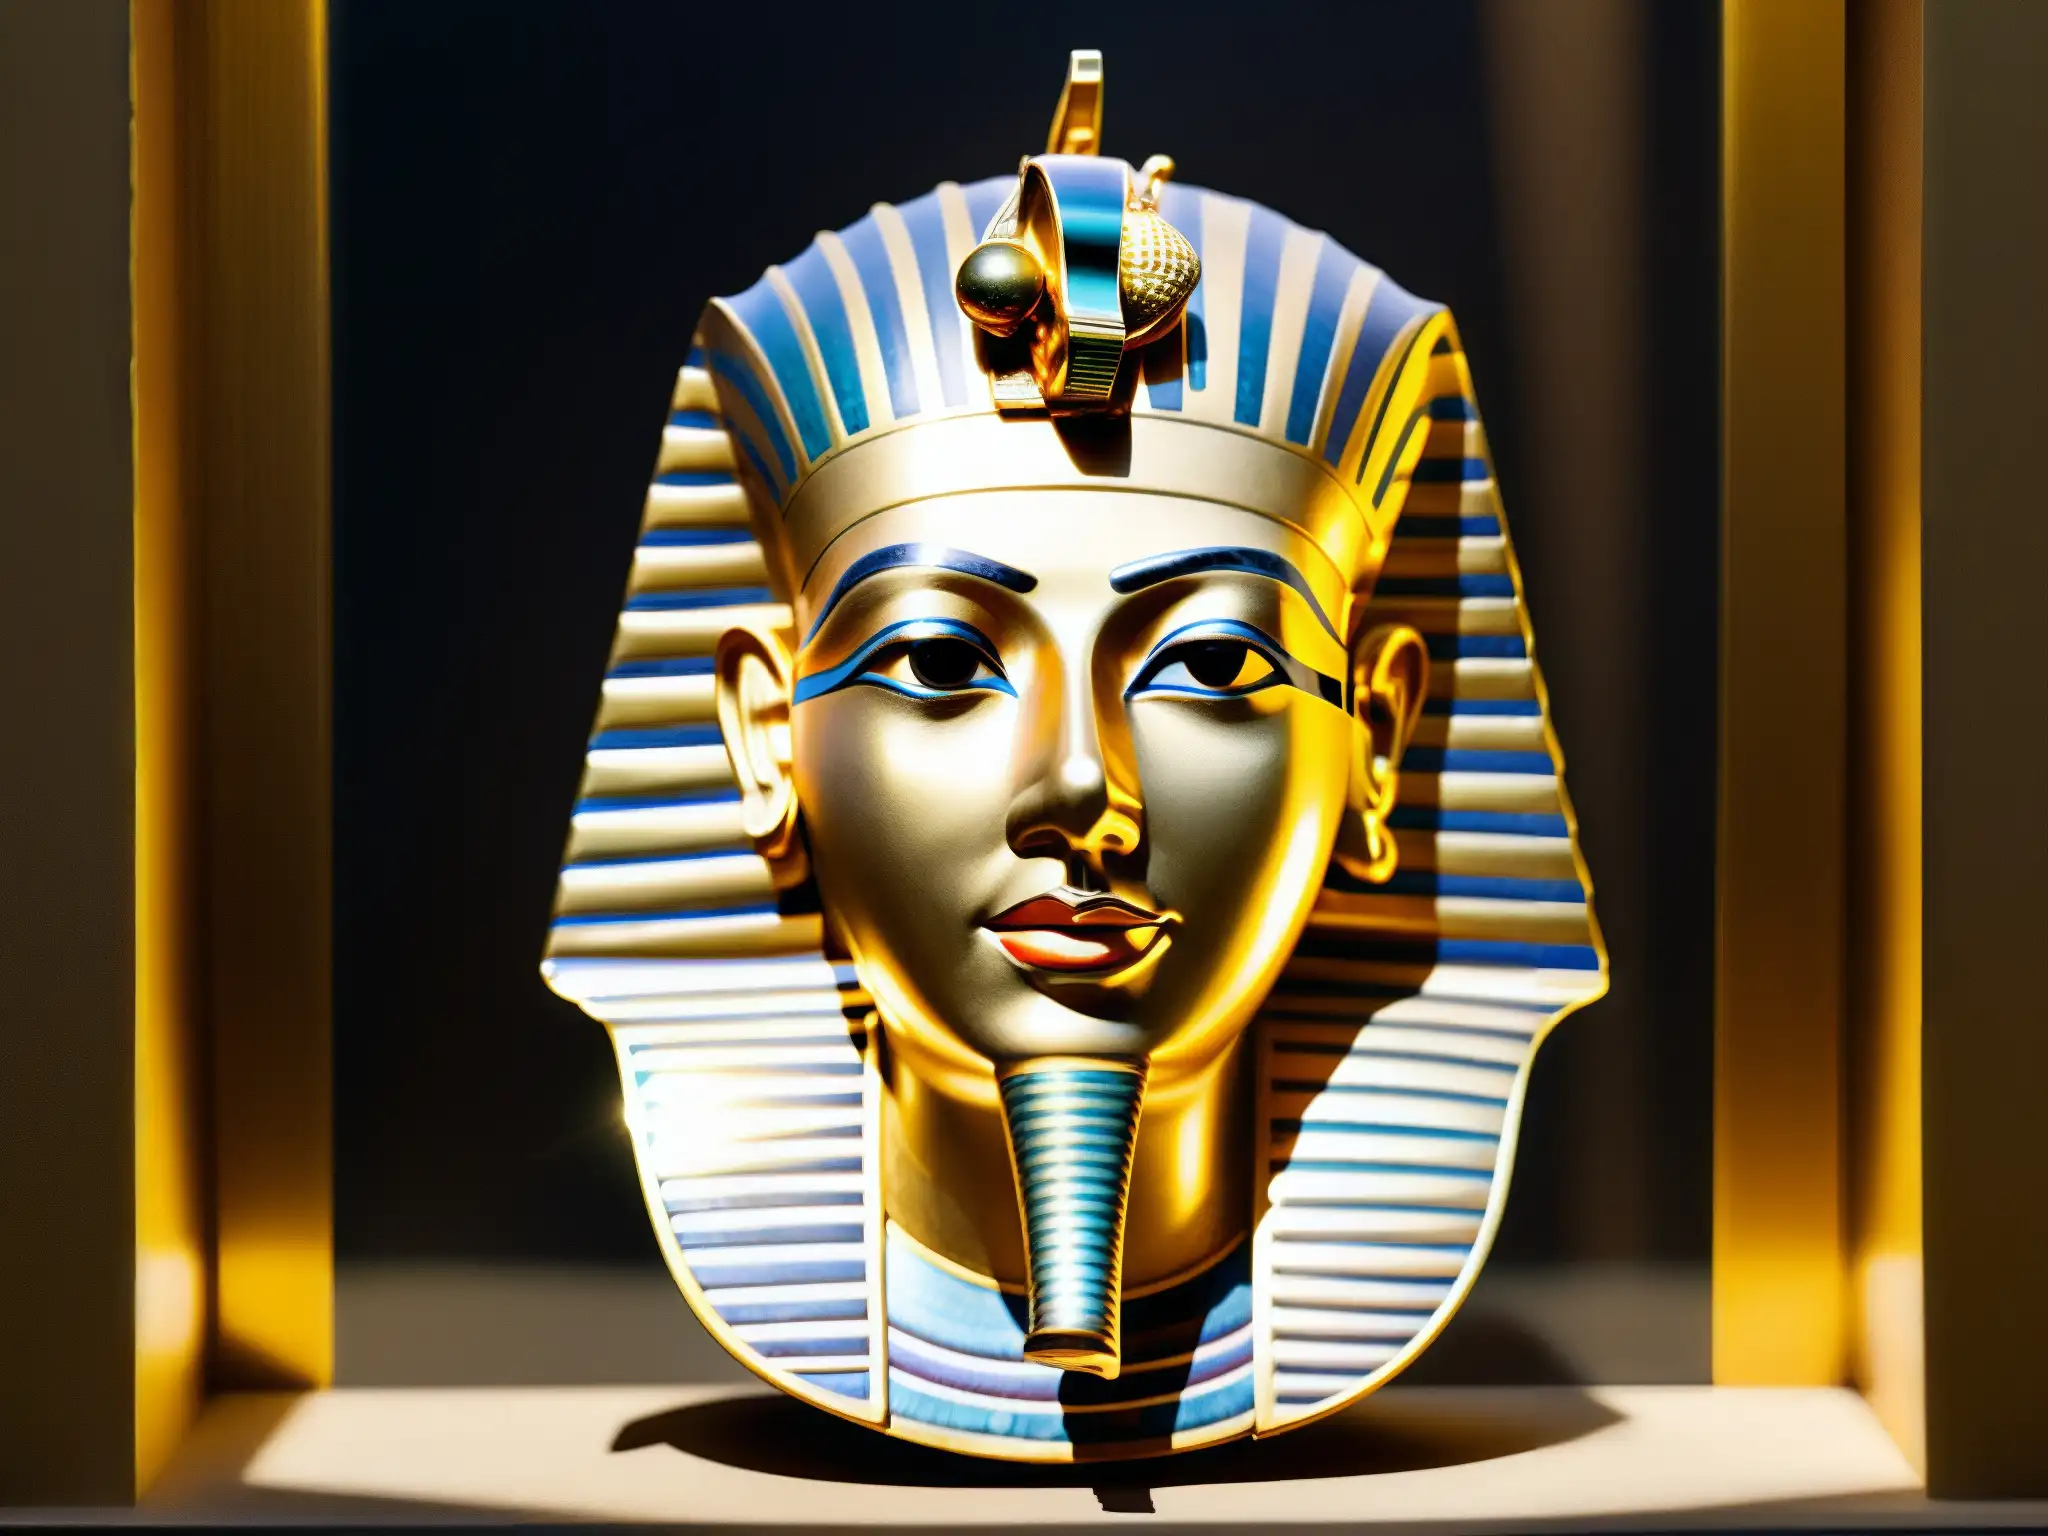 La misteriosa máscara dorada del rey Tutankamón, con juego de luces y sombras